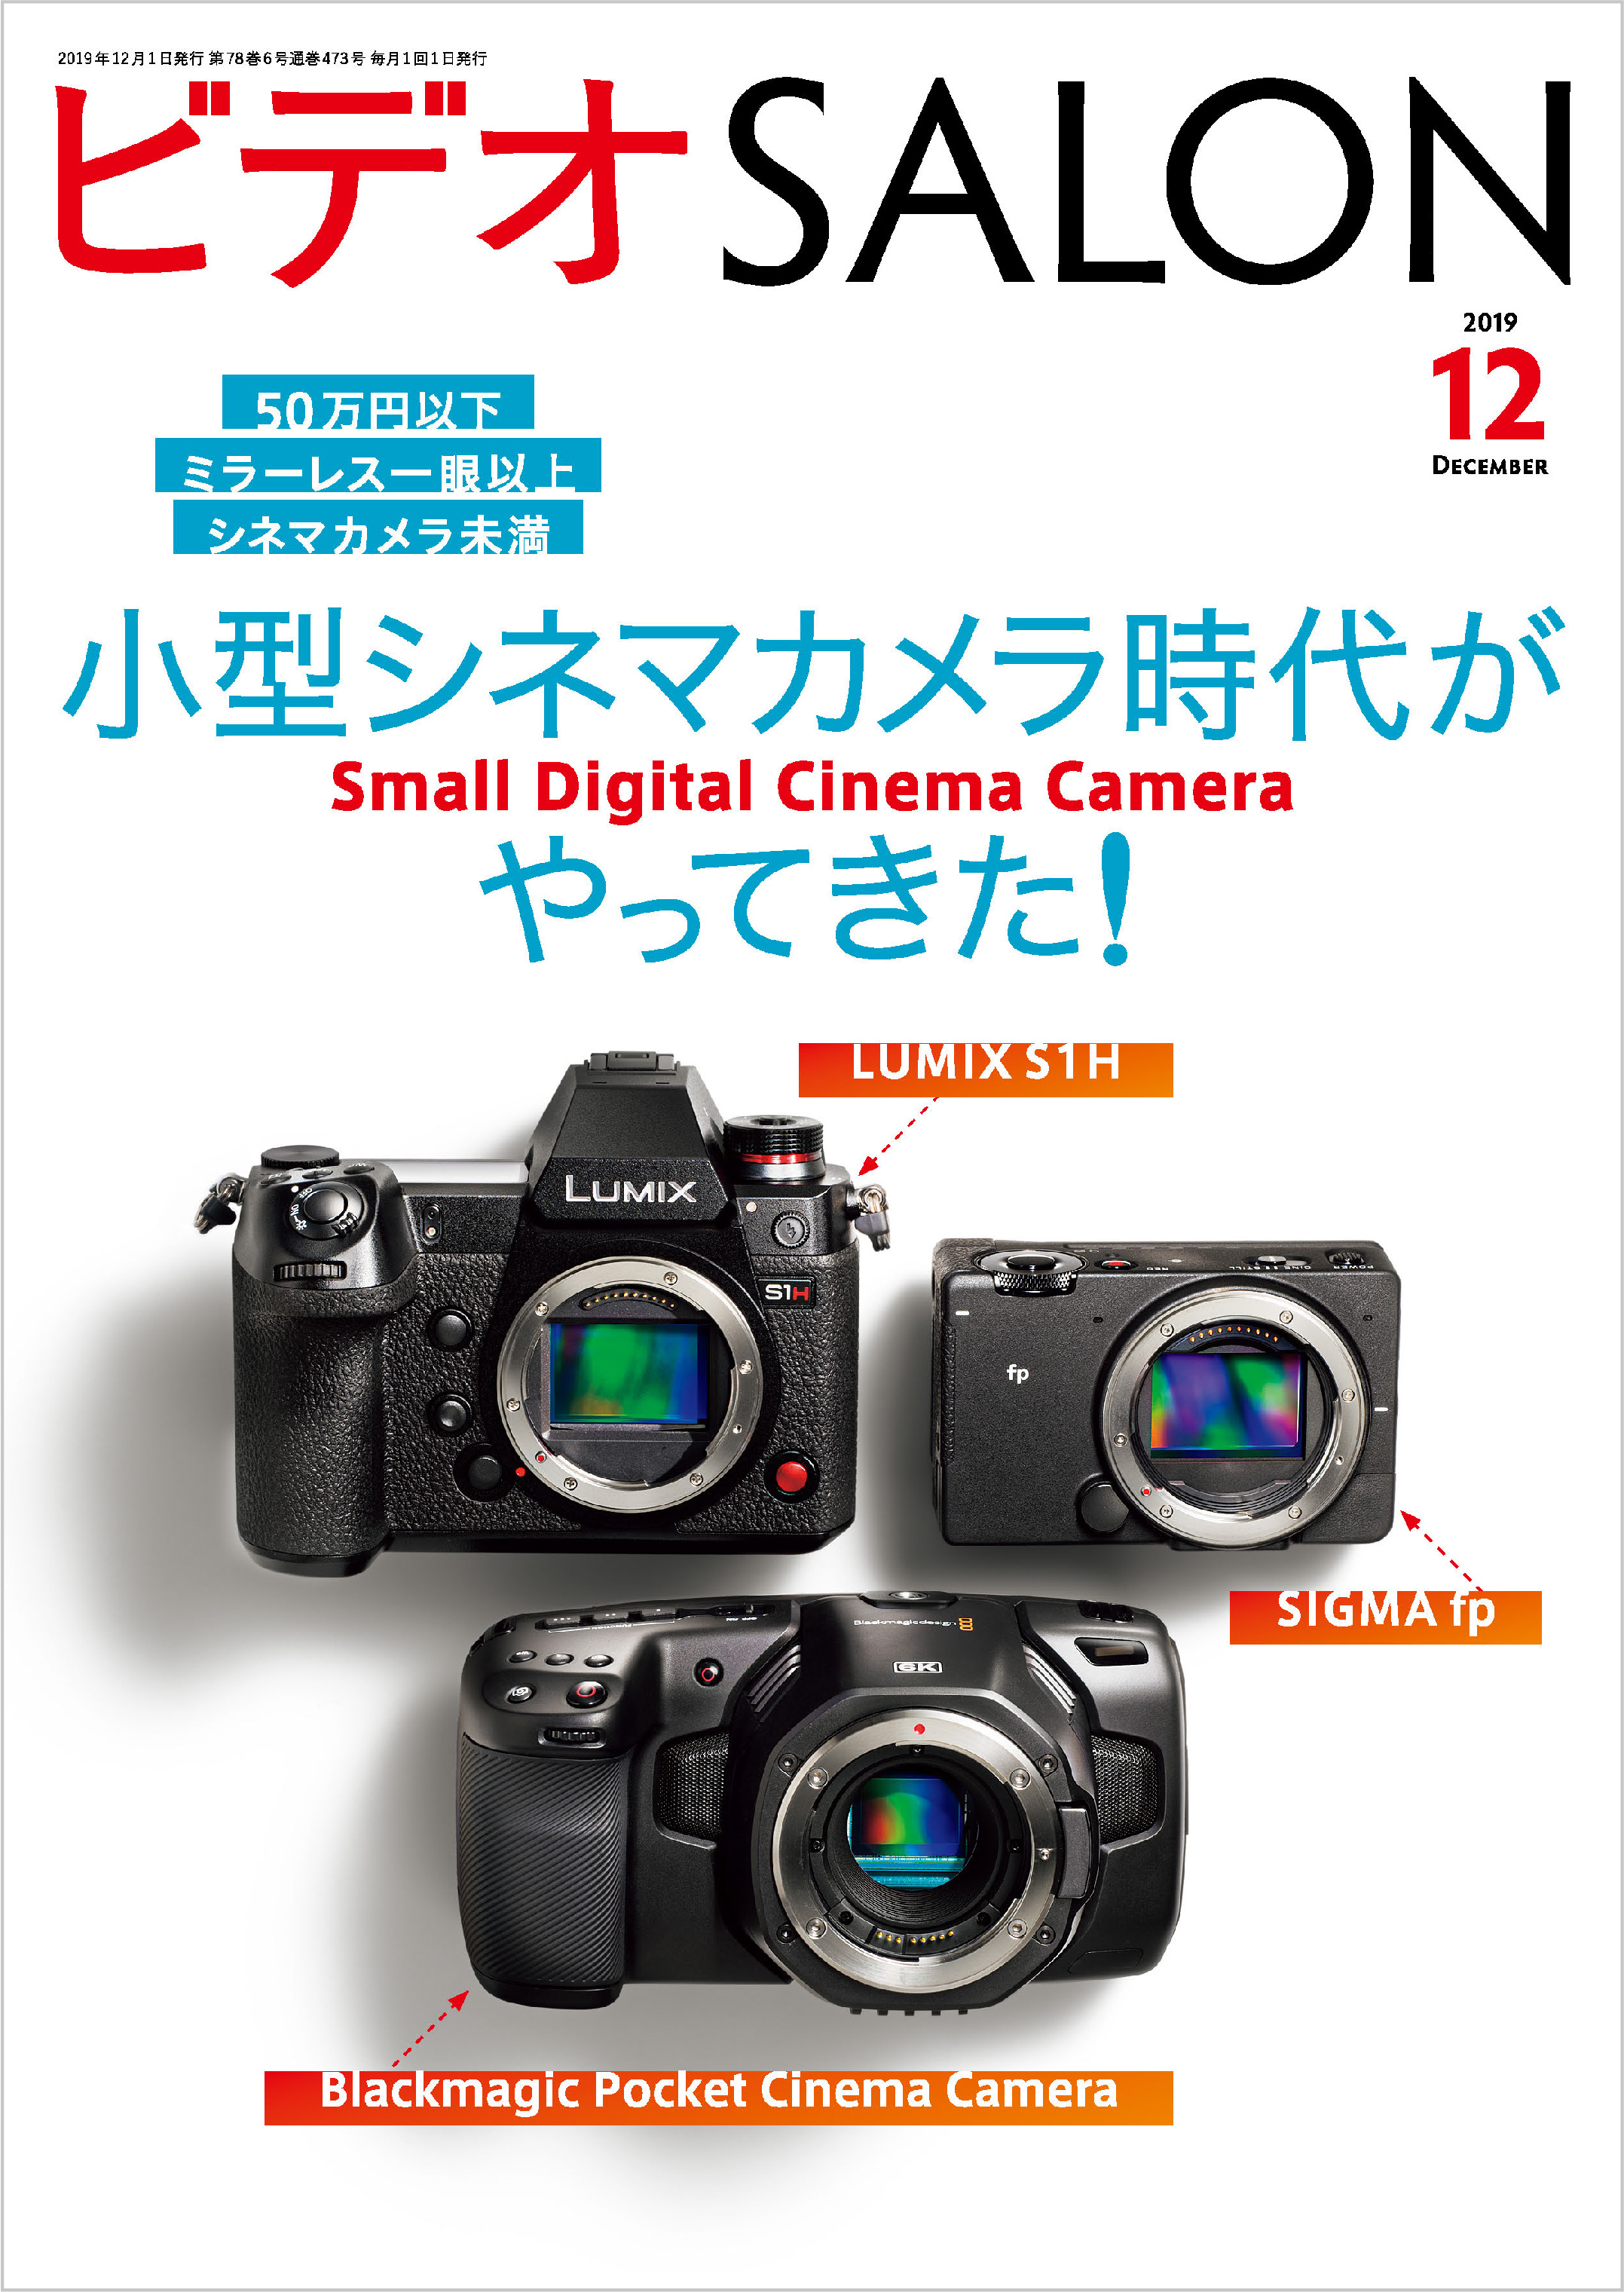 ソニー(SONY) FX6 Cinema Line カメラ レンズ付属モデル(付属レンズ